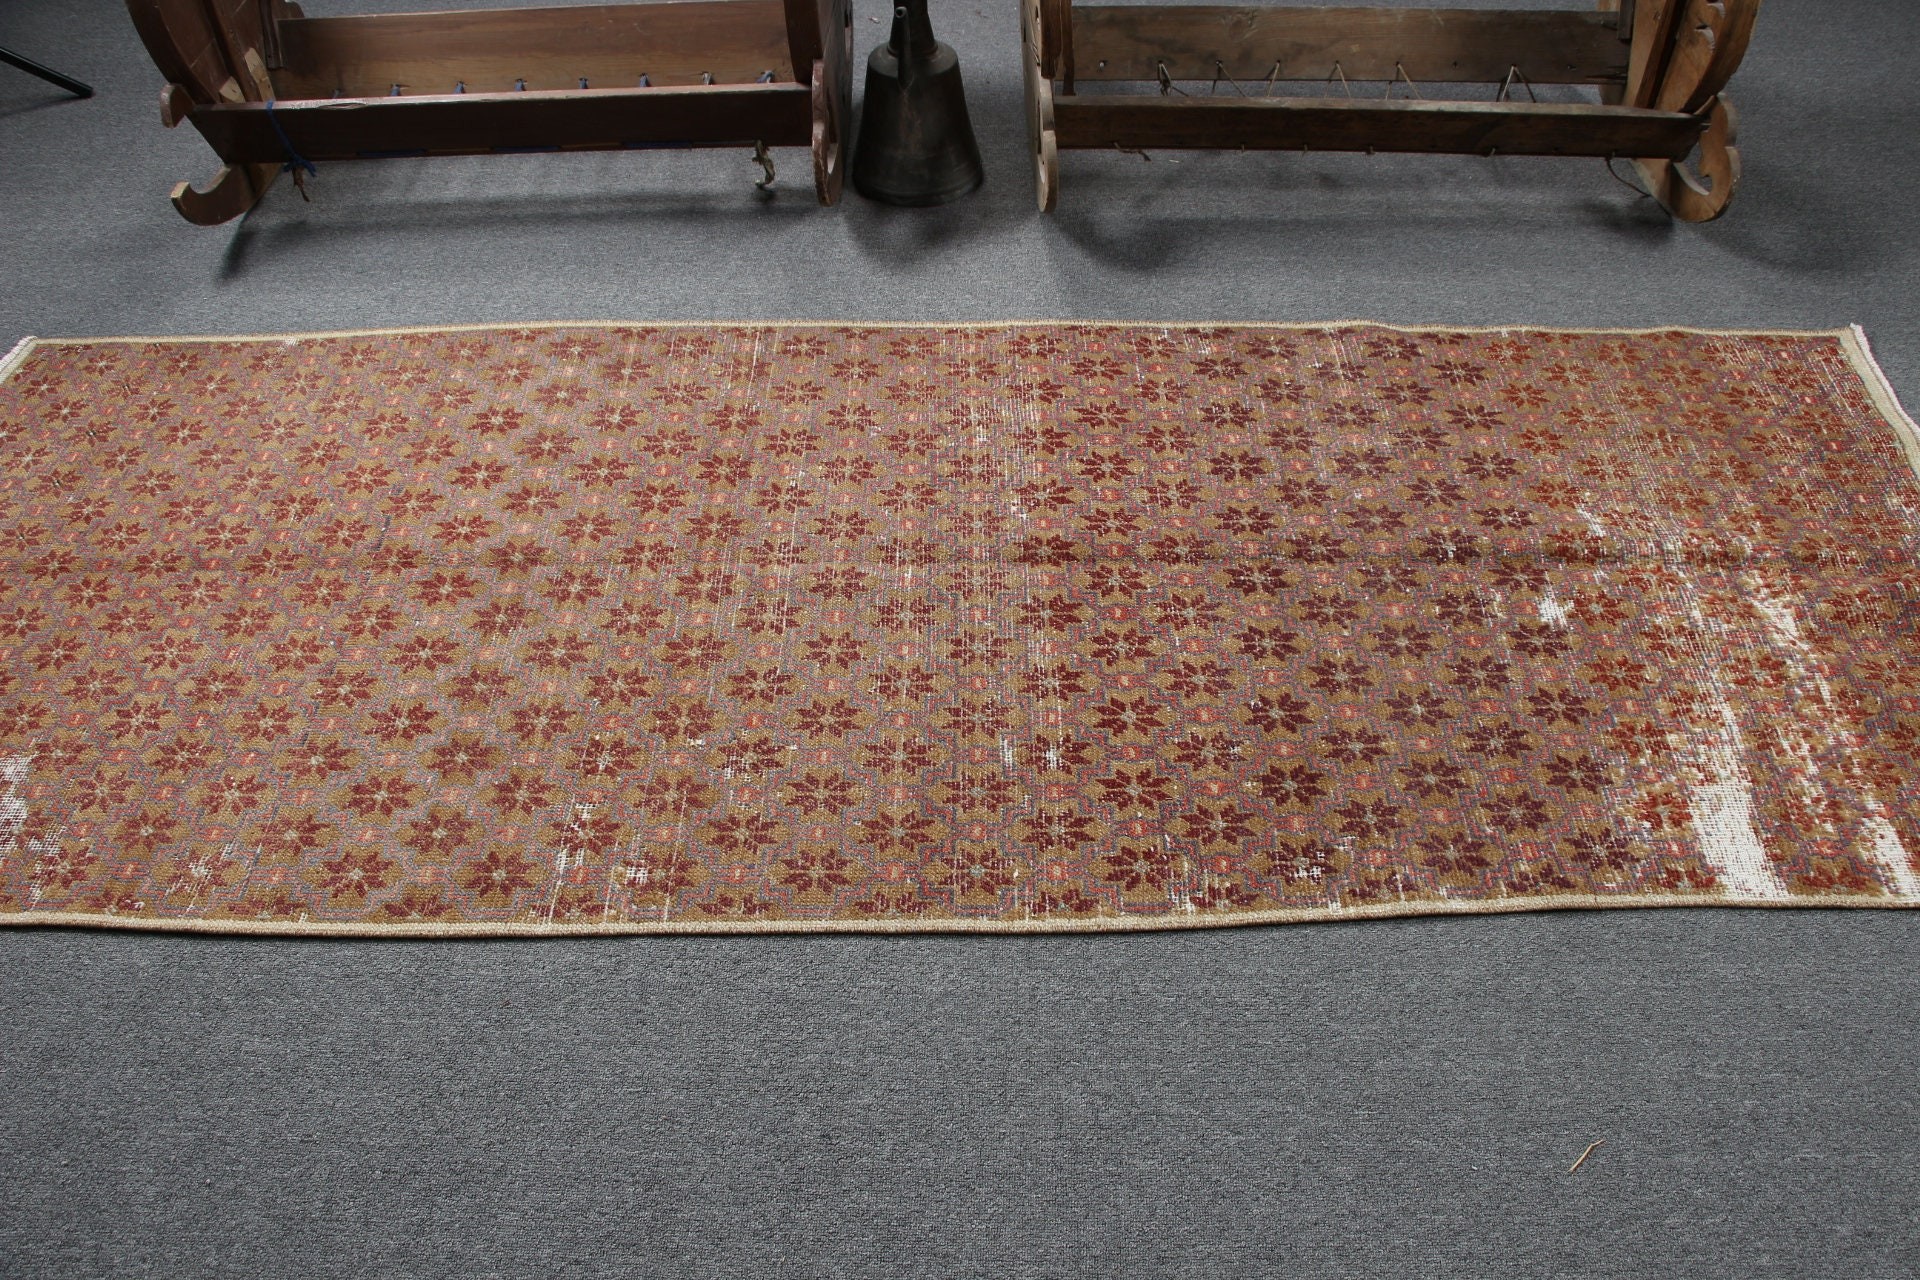 Rugs for Stair, Turkish Rug, Corridor Rug, Muted Rugs, Brown Home Decor Rug, 3.2x8.6 ft Runner Rug, Vintage Rug, Floor Rugs